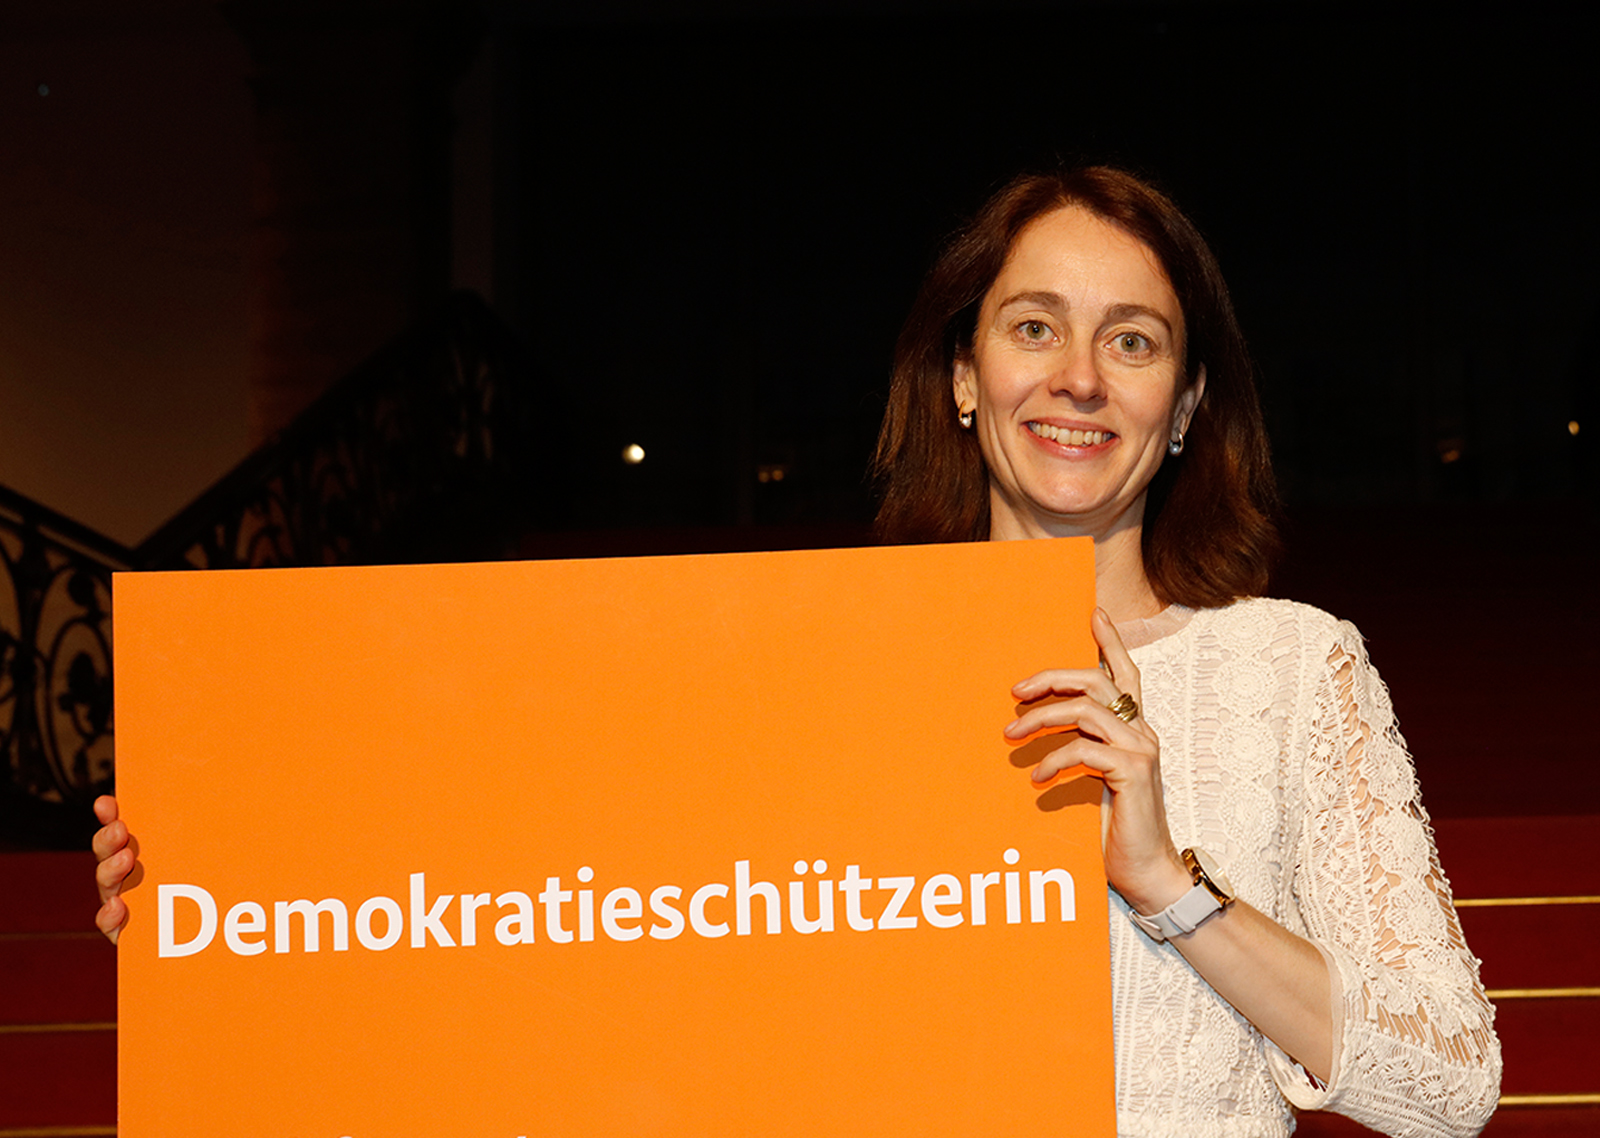 Katarina Barley mit einem Schild "Demokratieschützerin"